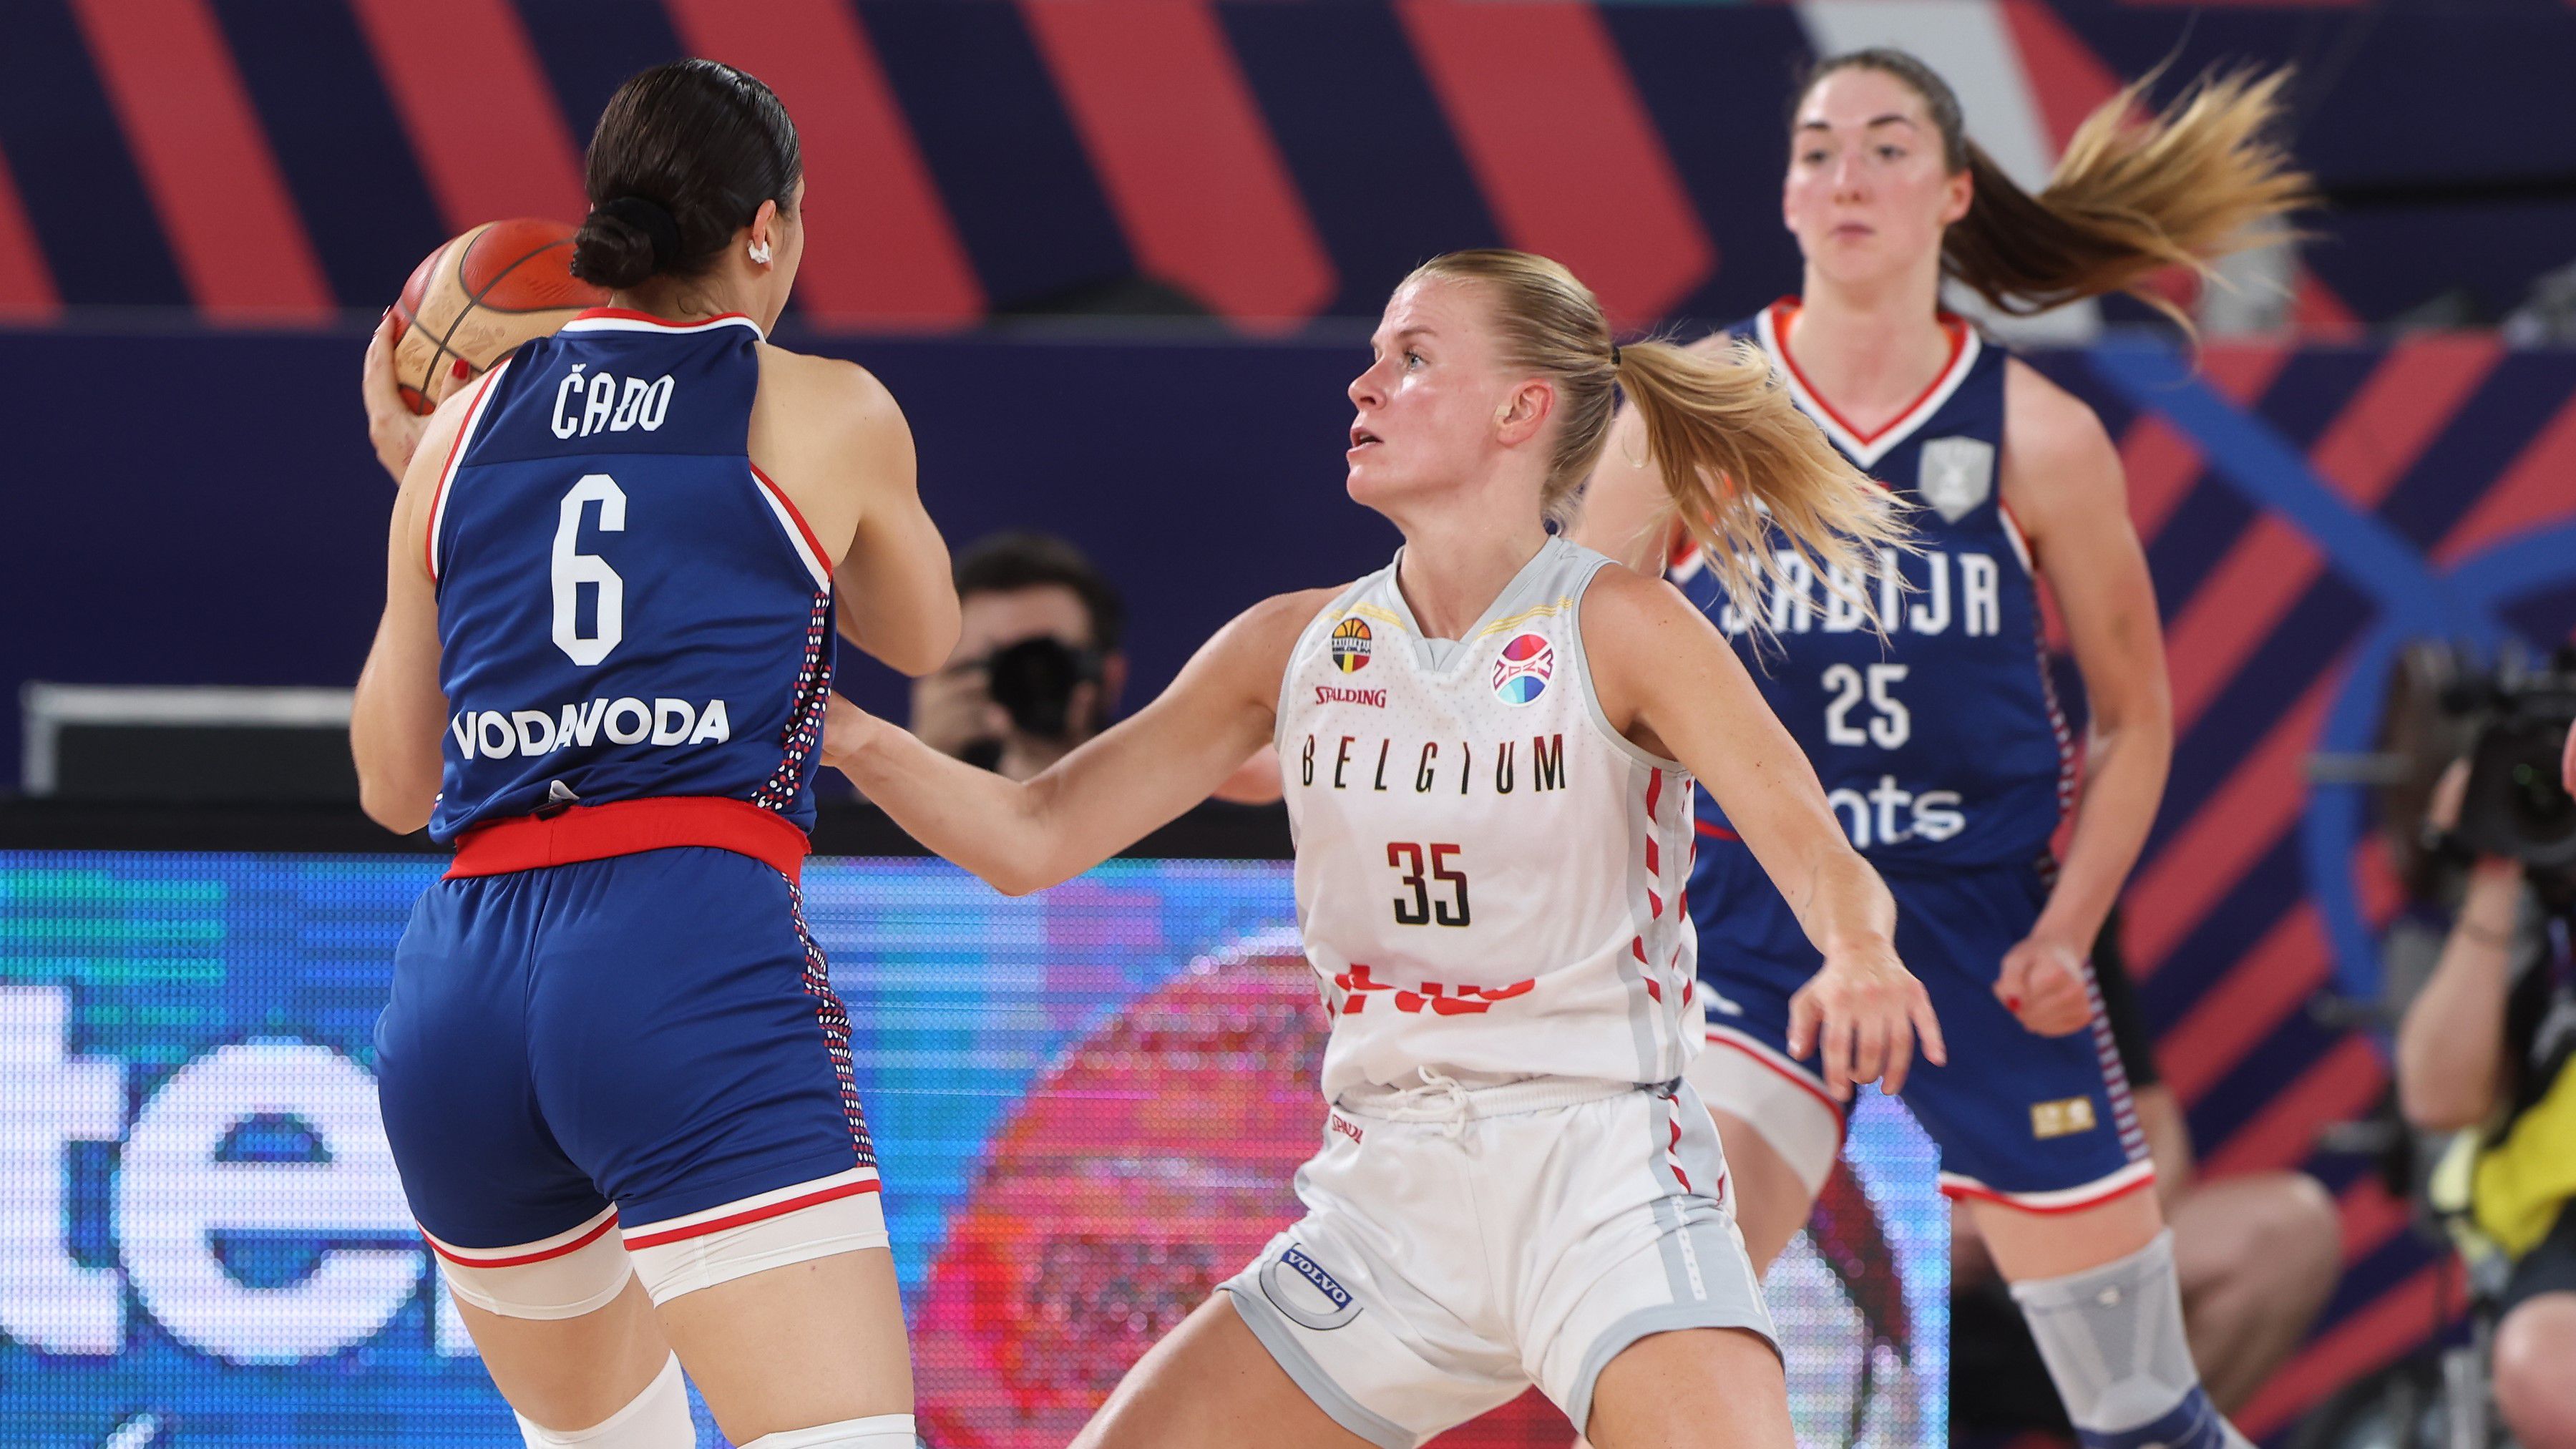 Szerbiáé az ötödik hely a női kosárlabda Európa-bajnokságon